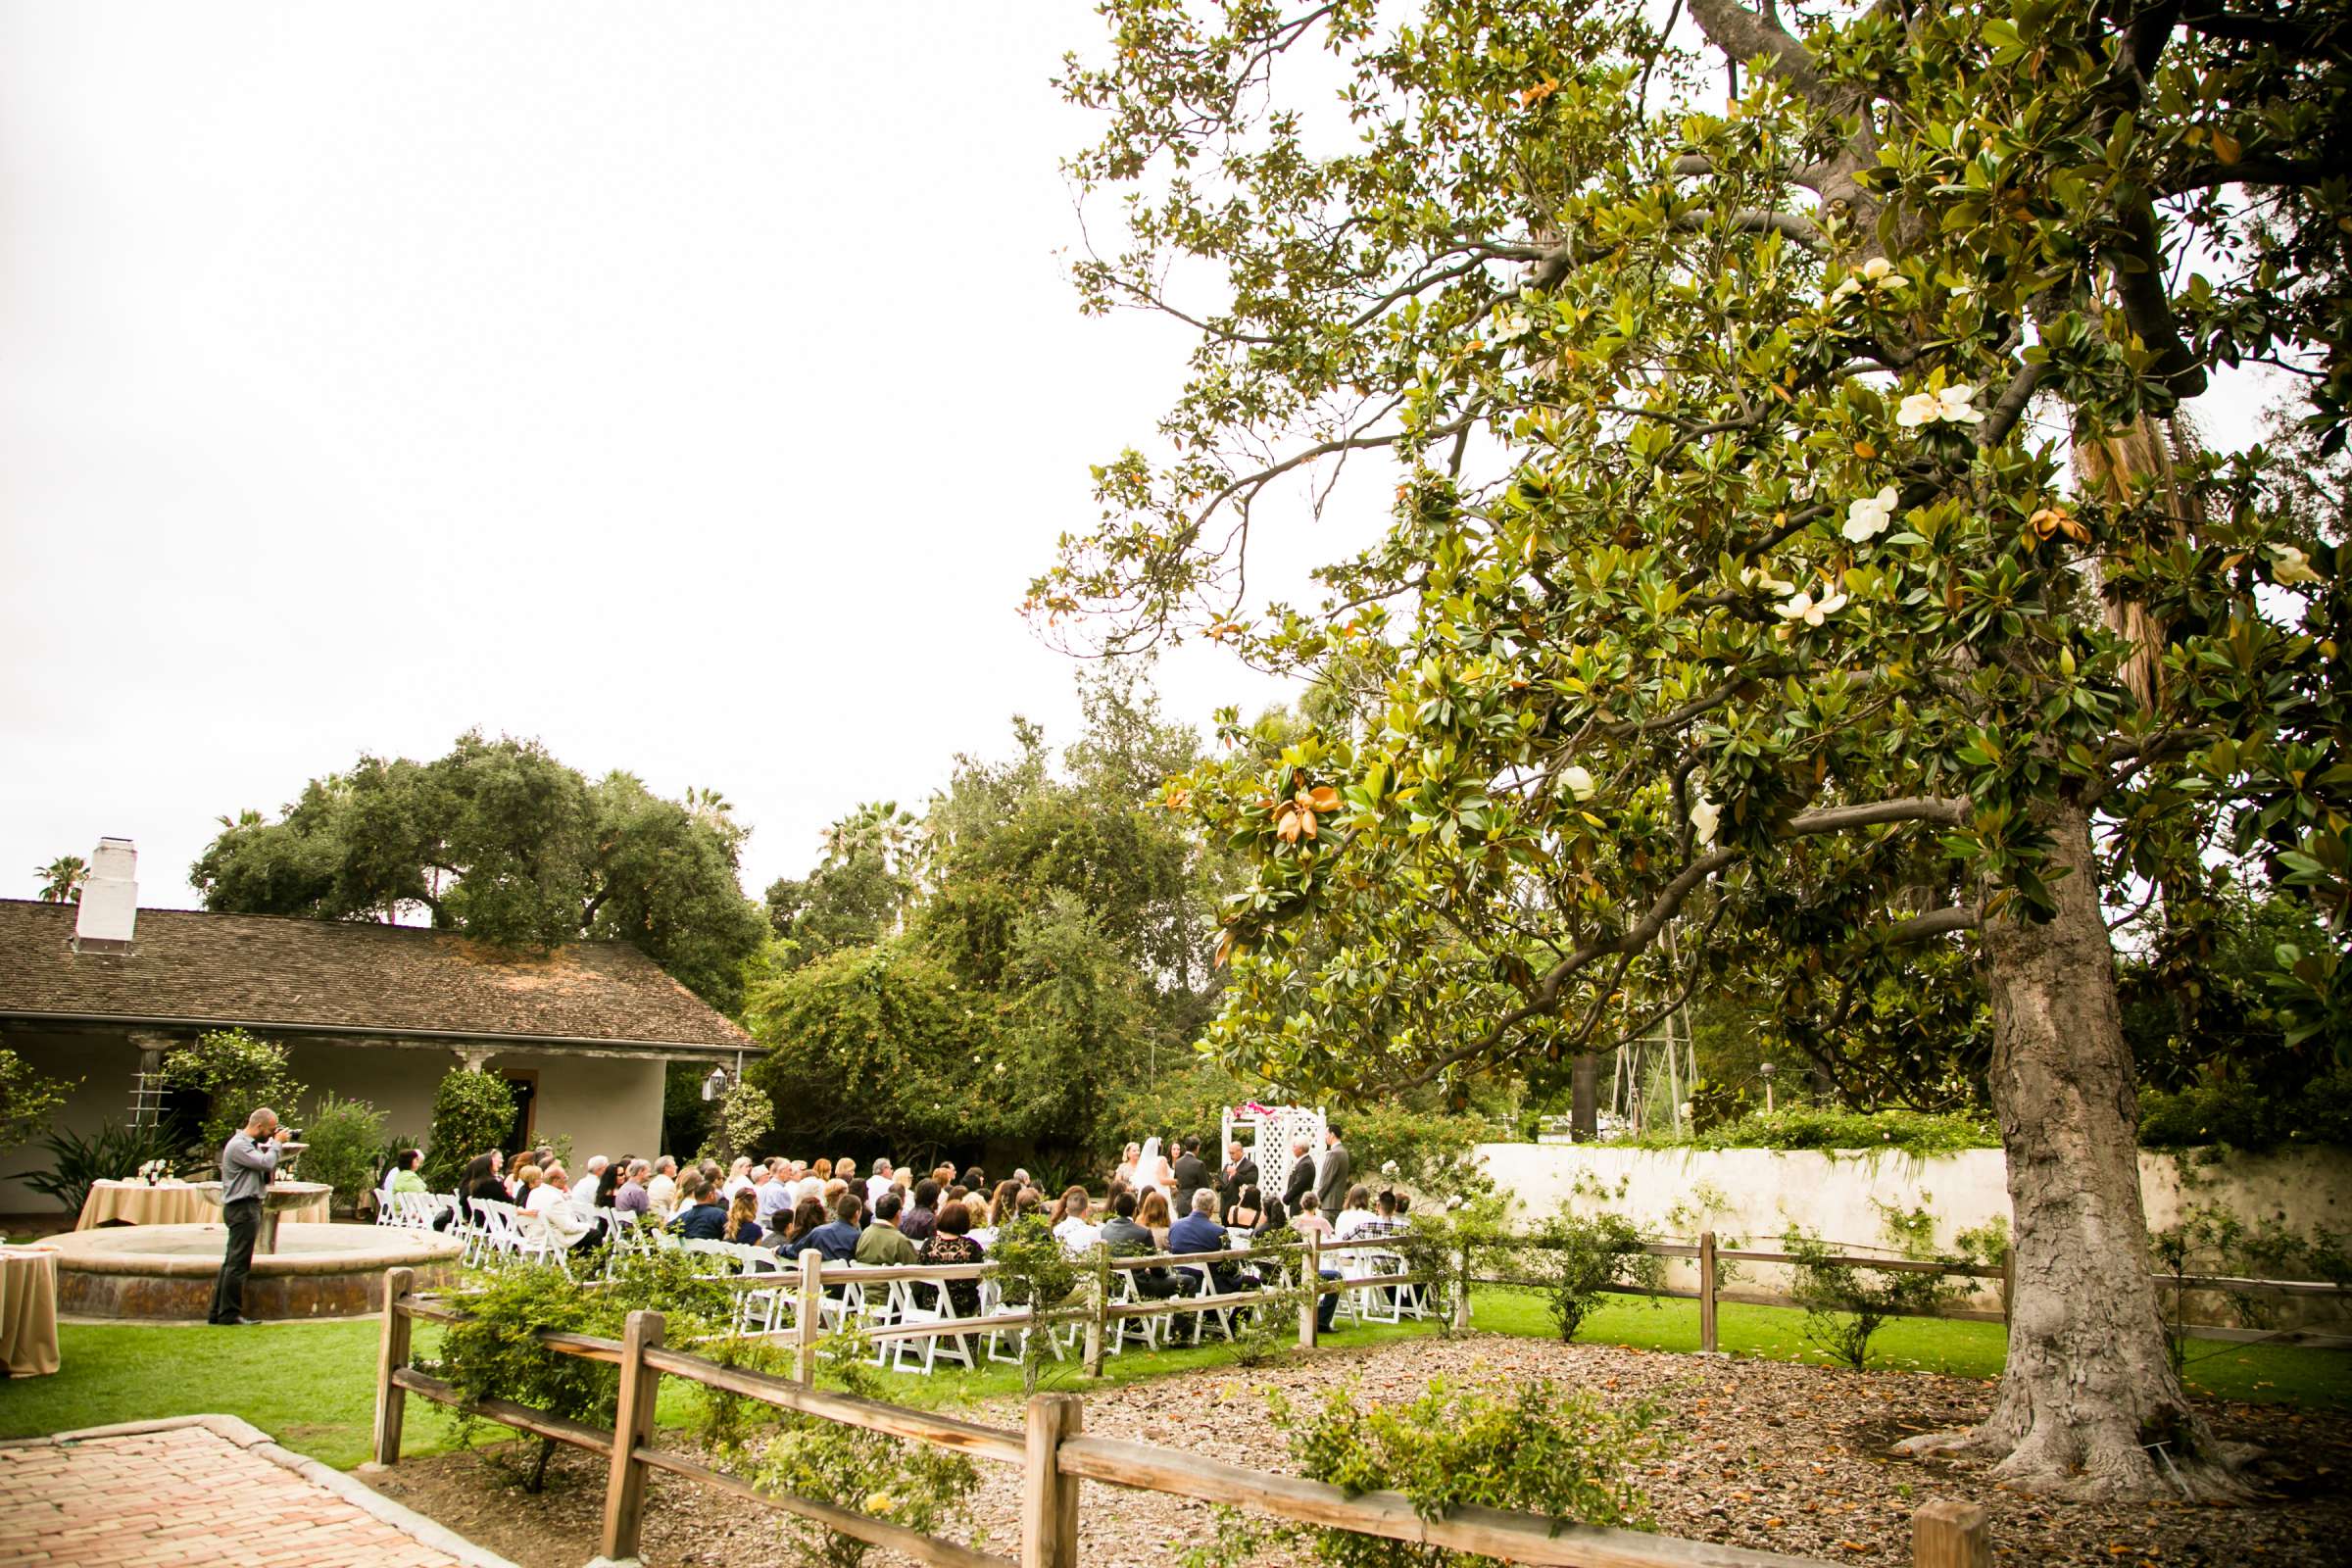 Rancho Buena Vista Adobe Wedding, Ellinor and Frank Wedding Photo #26 by True Photography